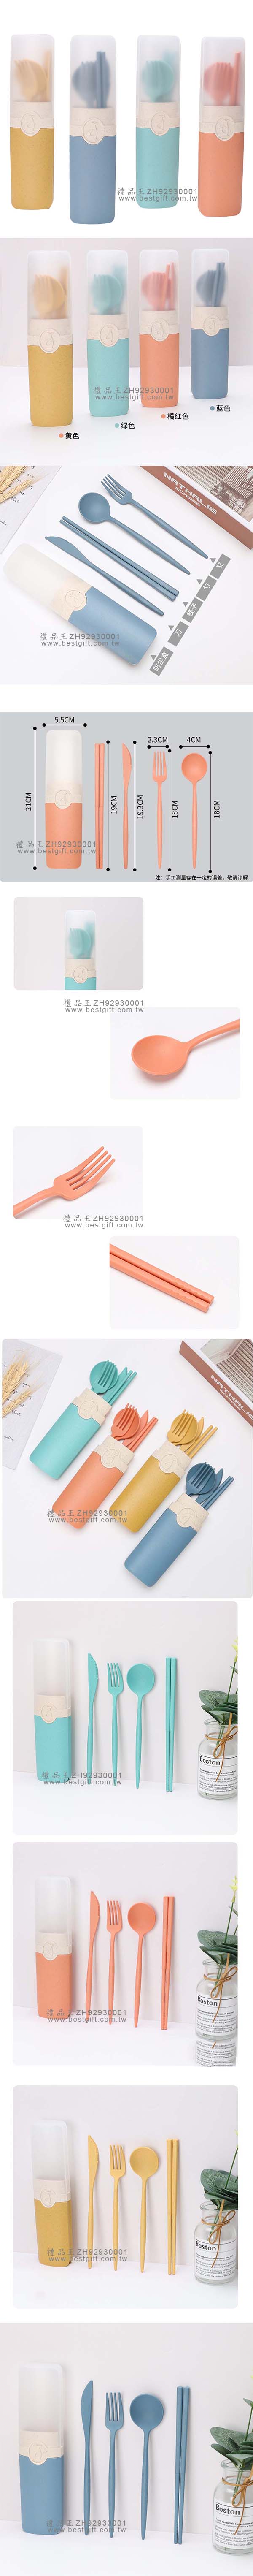 小麥秸稈刀叉勺筷四件套